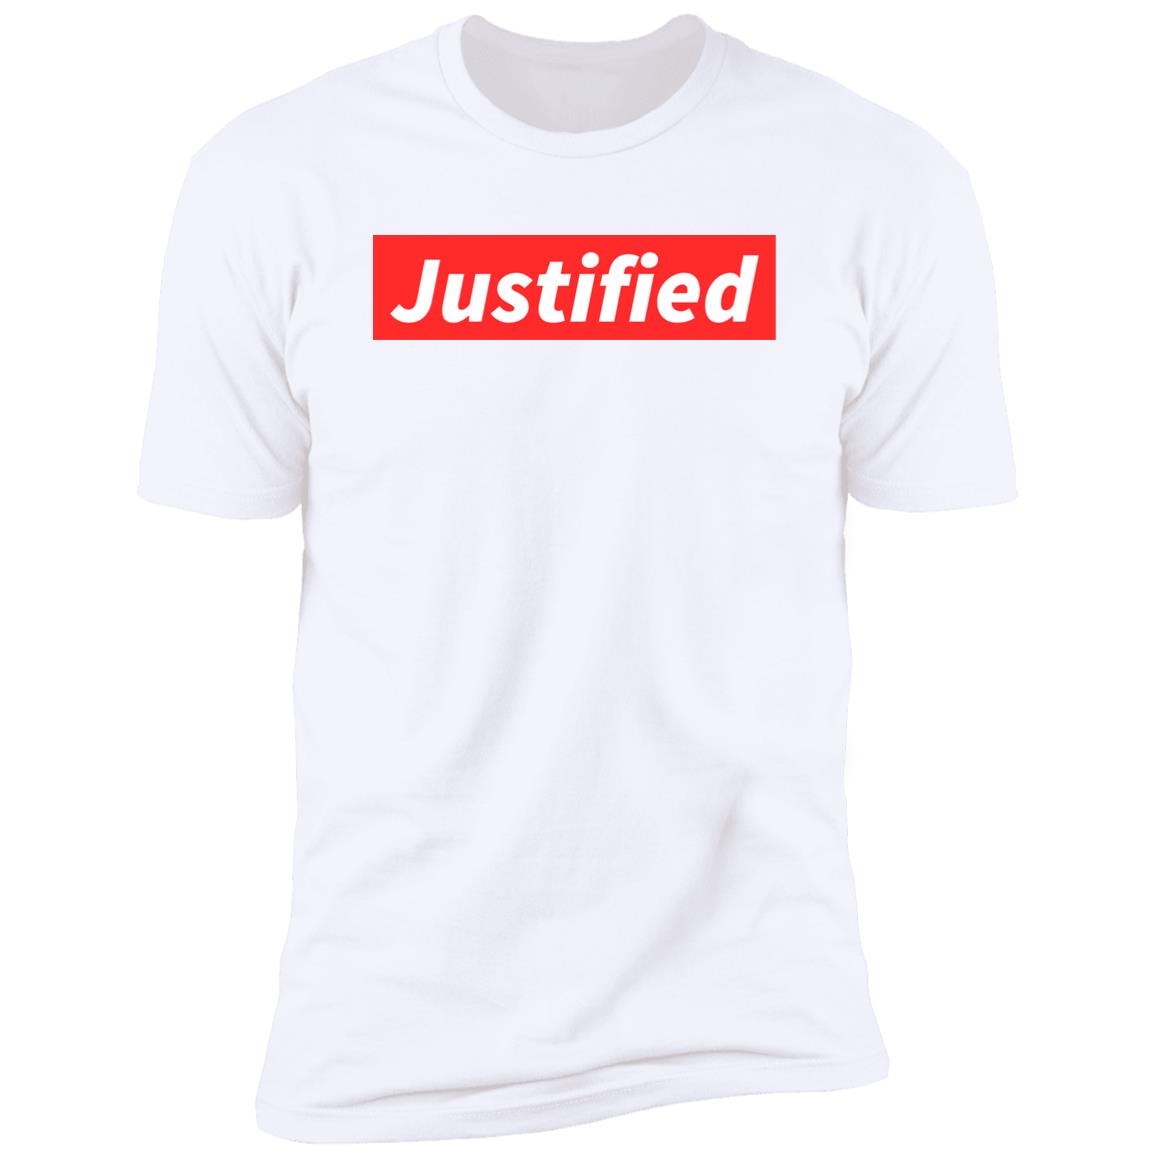 Justified (Unisex Tee)